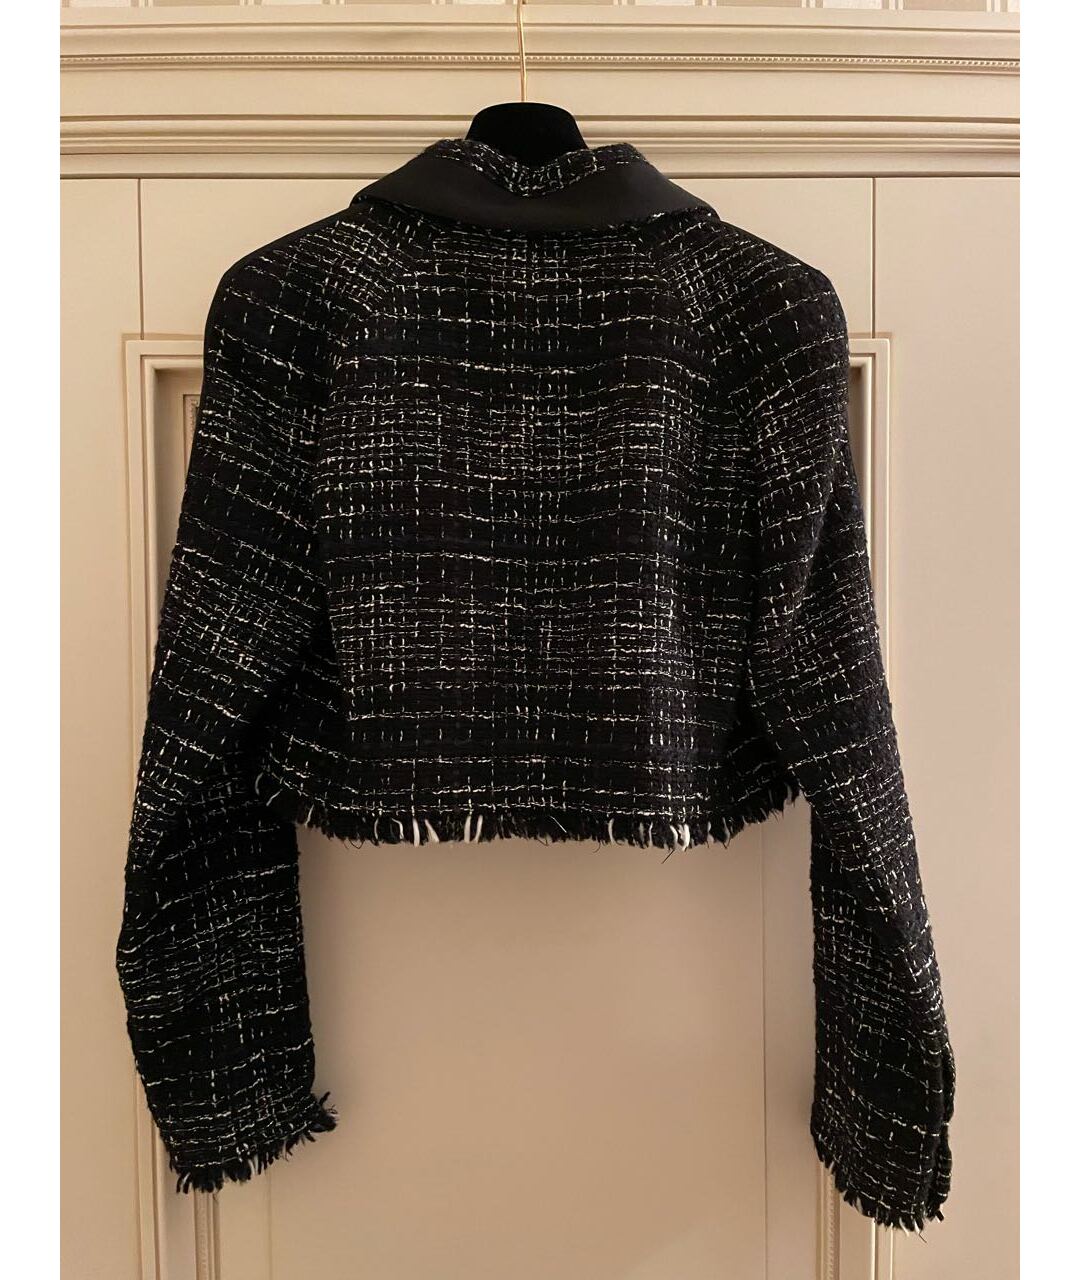 CHANEL PRE-OWNED Черный твидовый жакет/пиджак, фото 3